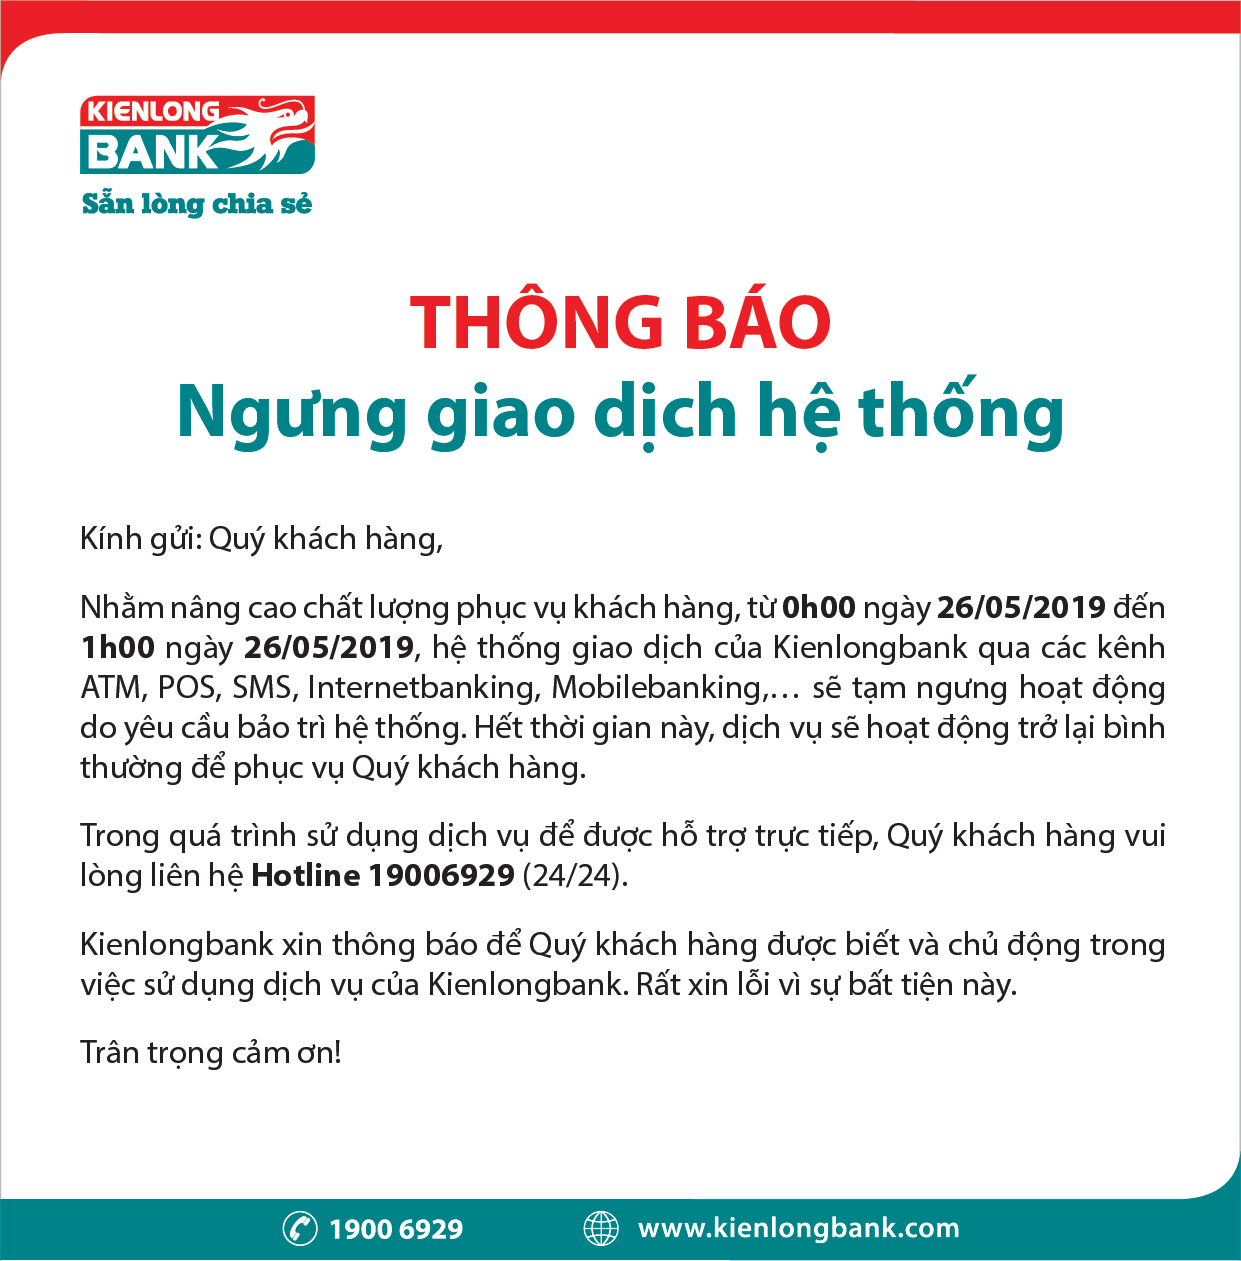 Thong-bao-tam-ngung-giao-dich-he-thong-Kienlongbank